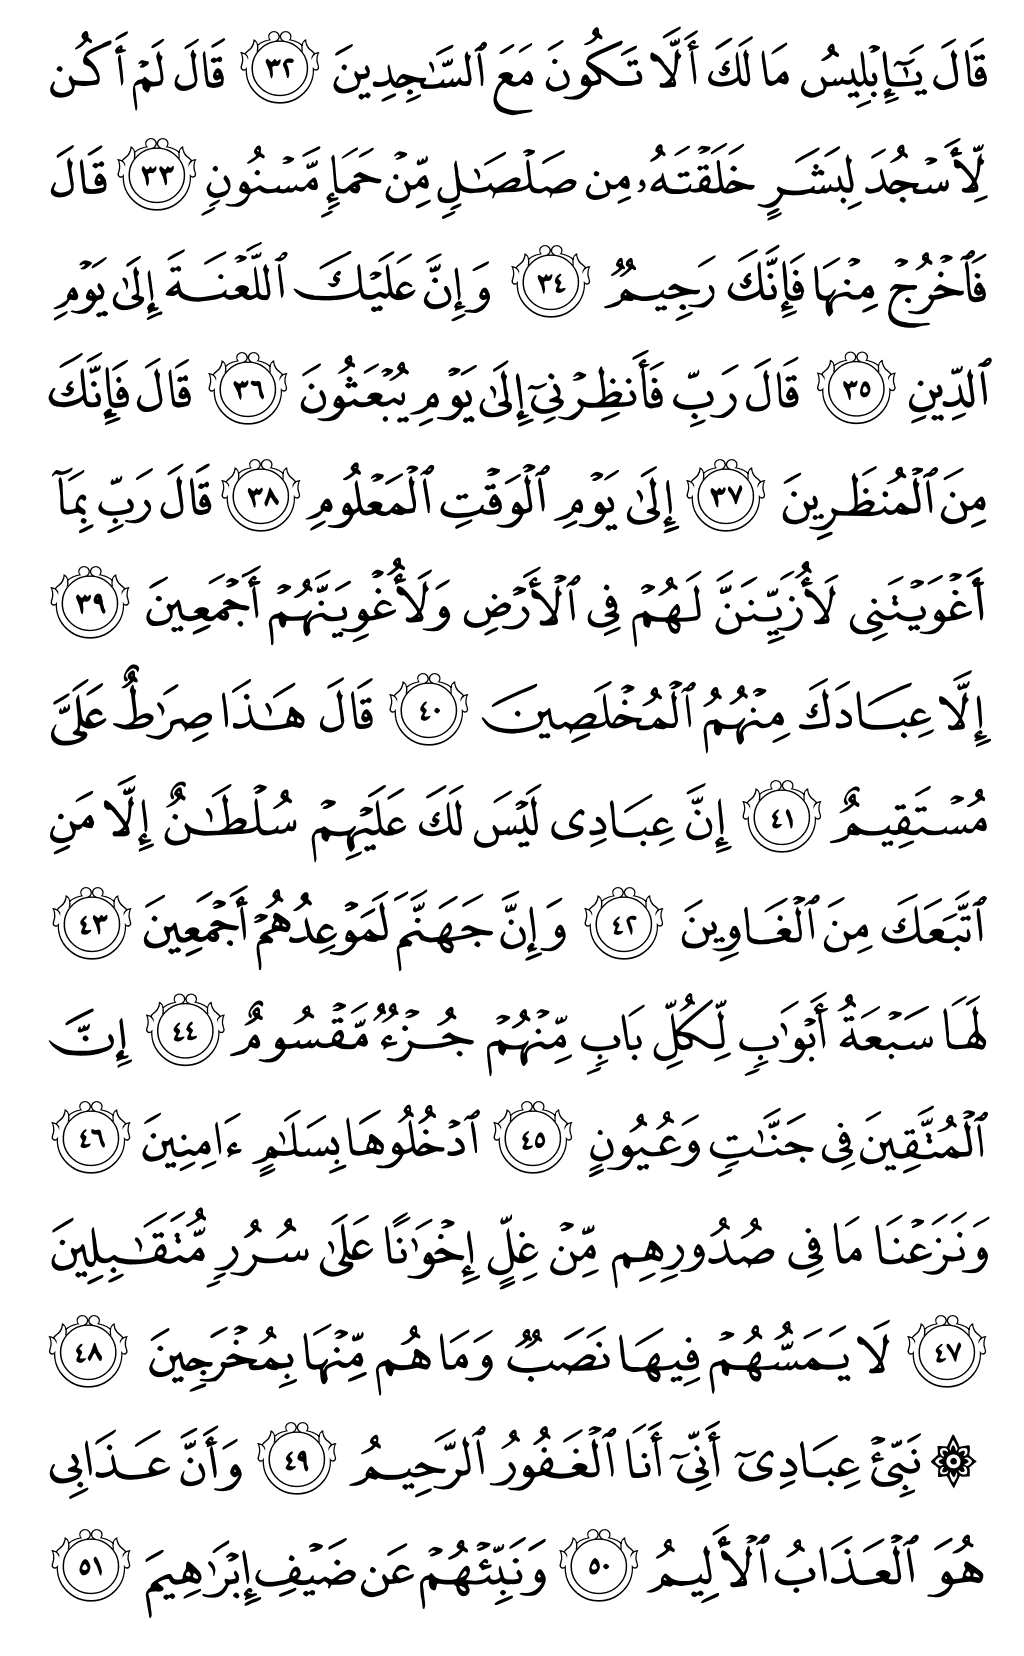 الصفحة رقم 264 من القرآن الكريم